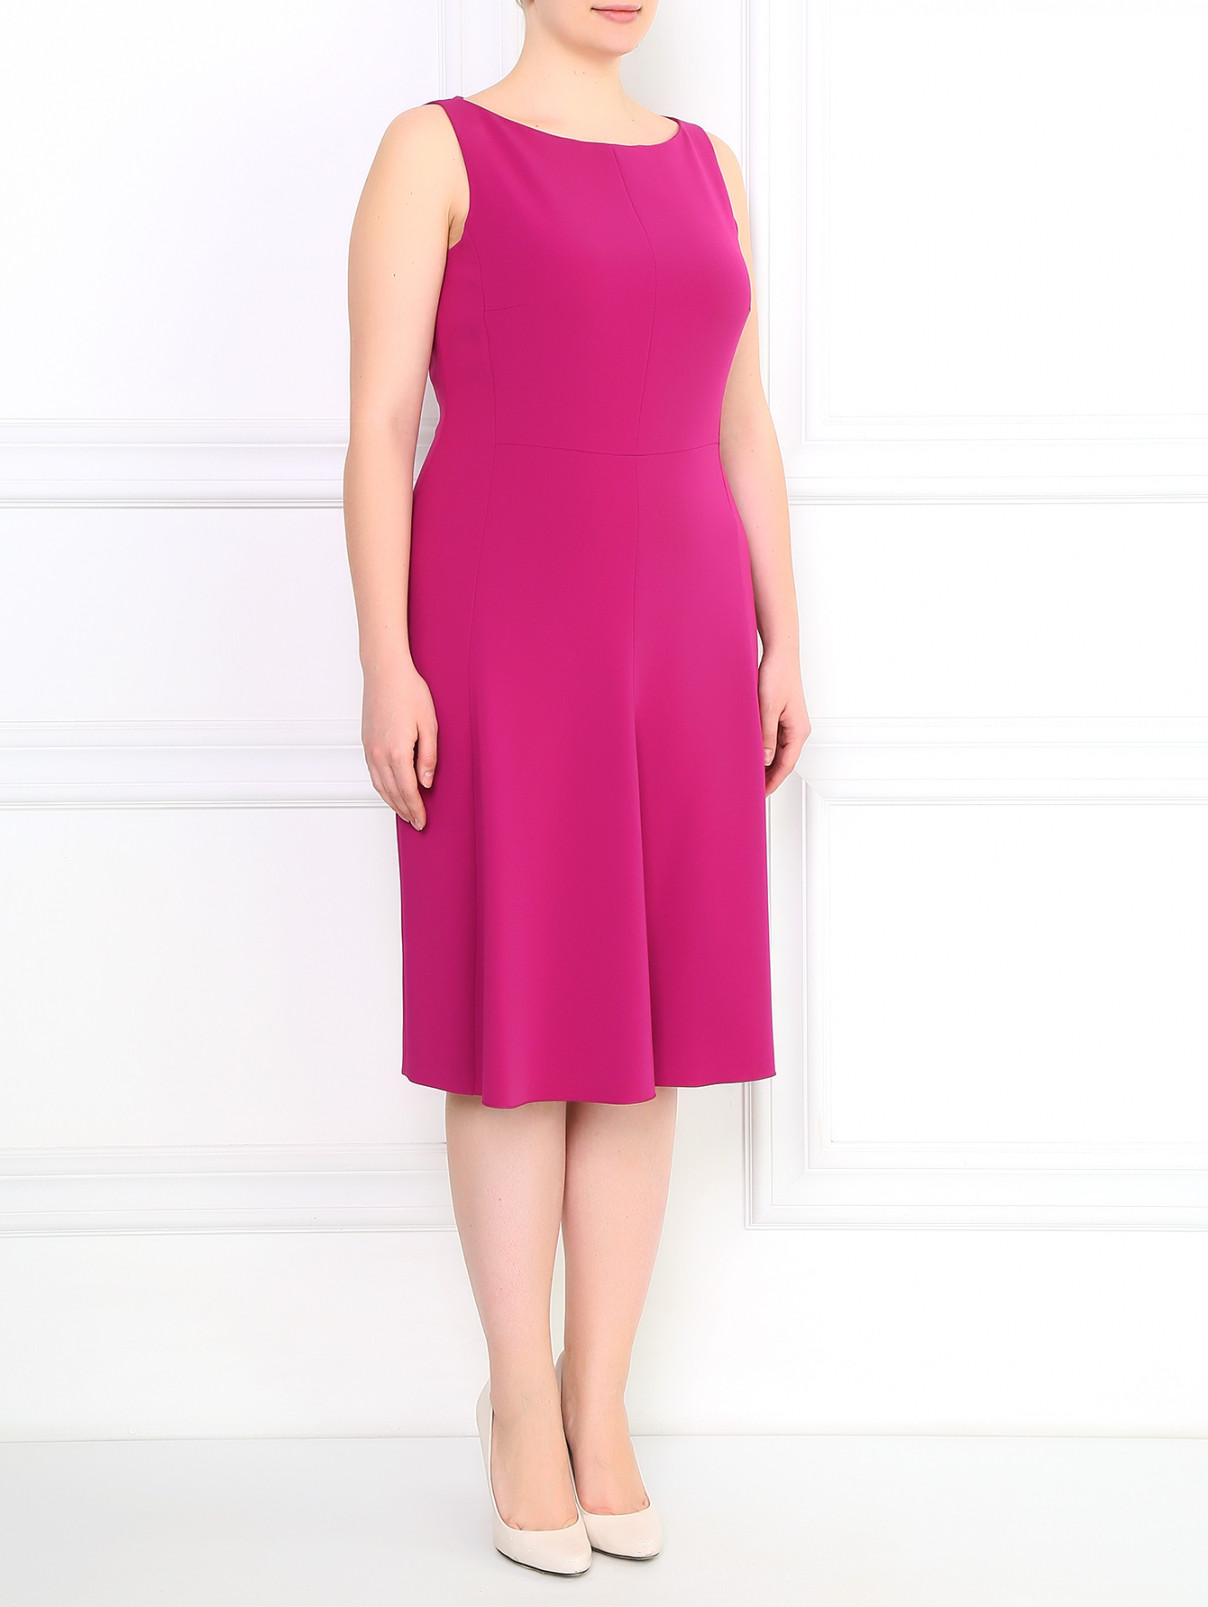 Платье-футляр Marina Rinaldi  –  Модель Общий вид  – Цвет:  Розовый